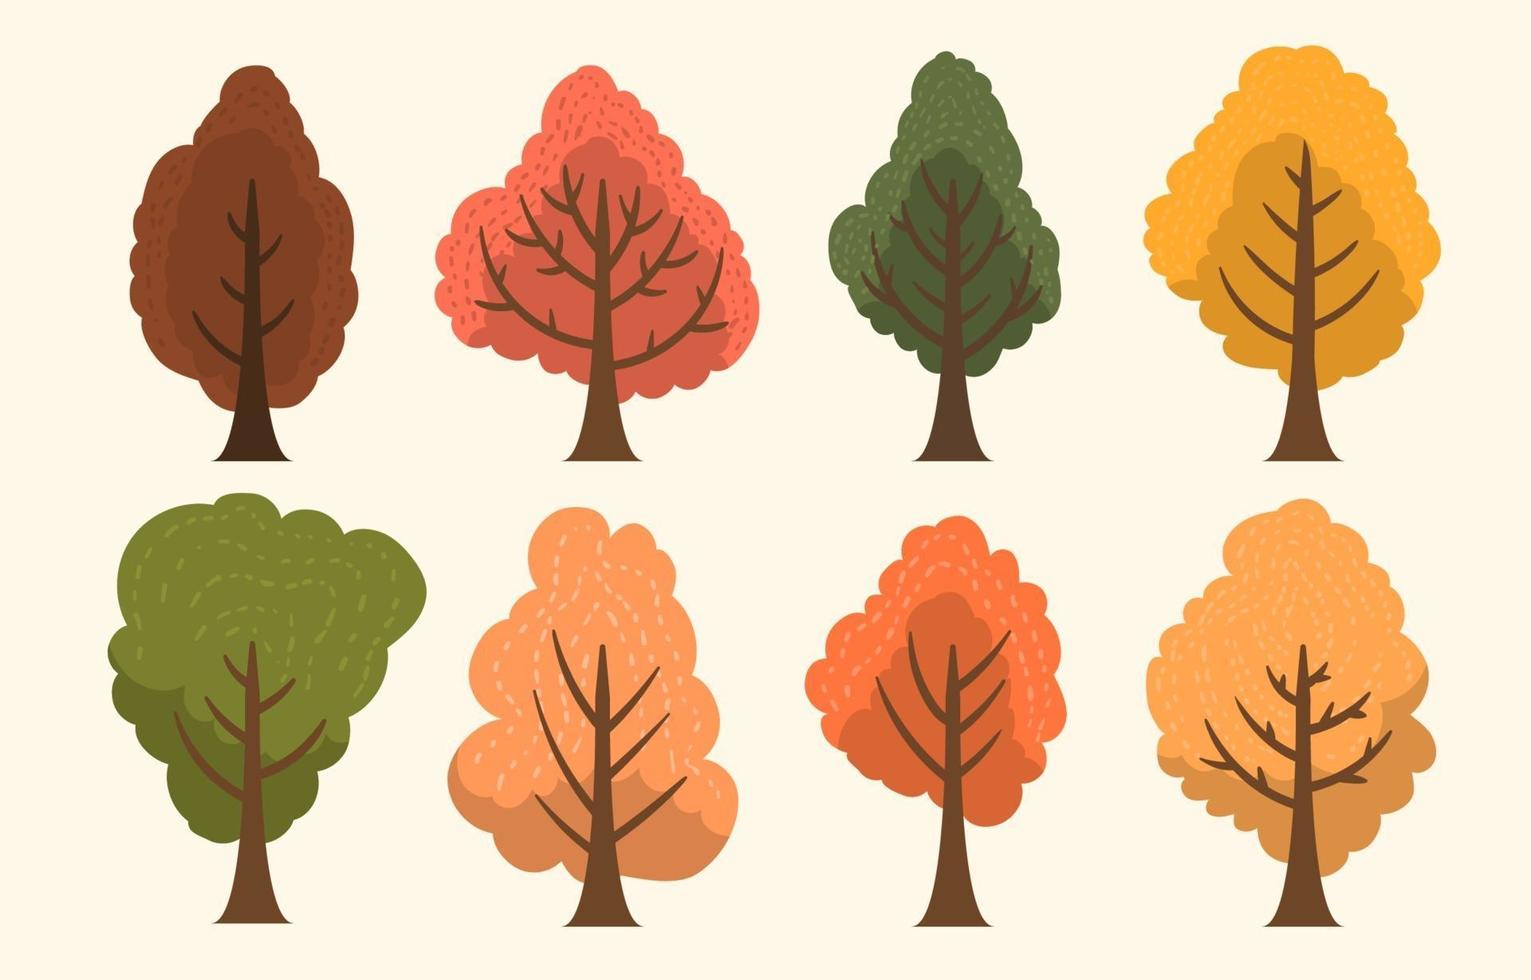 coleção de árvores de outono vetor